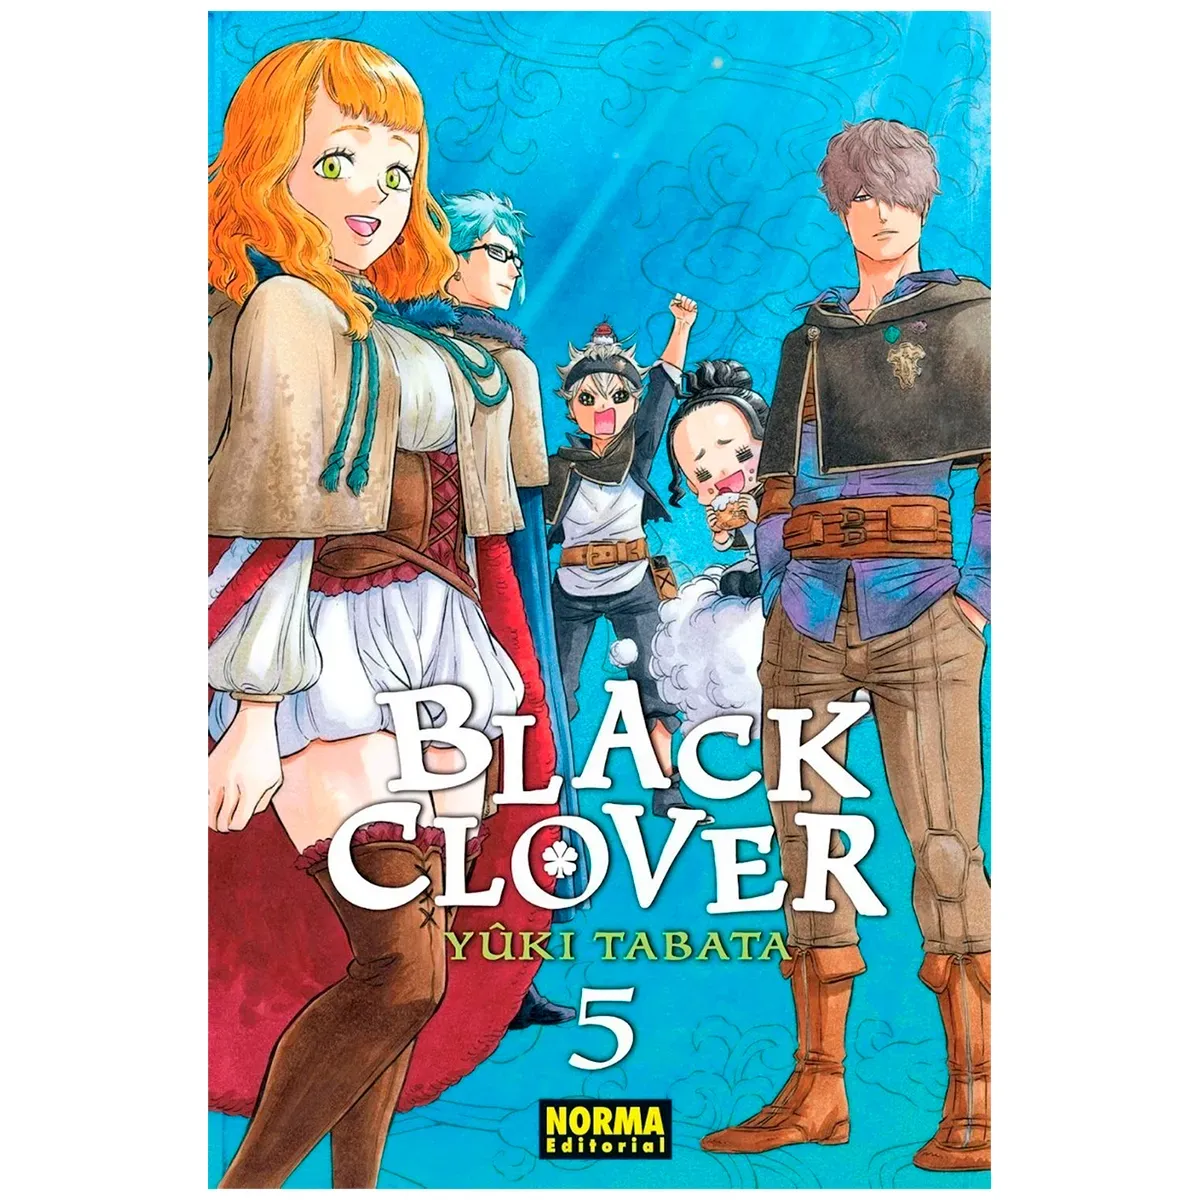 Black Clover No. 5